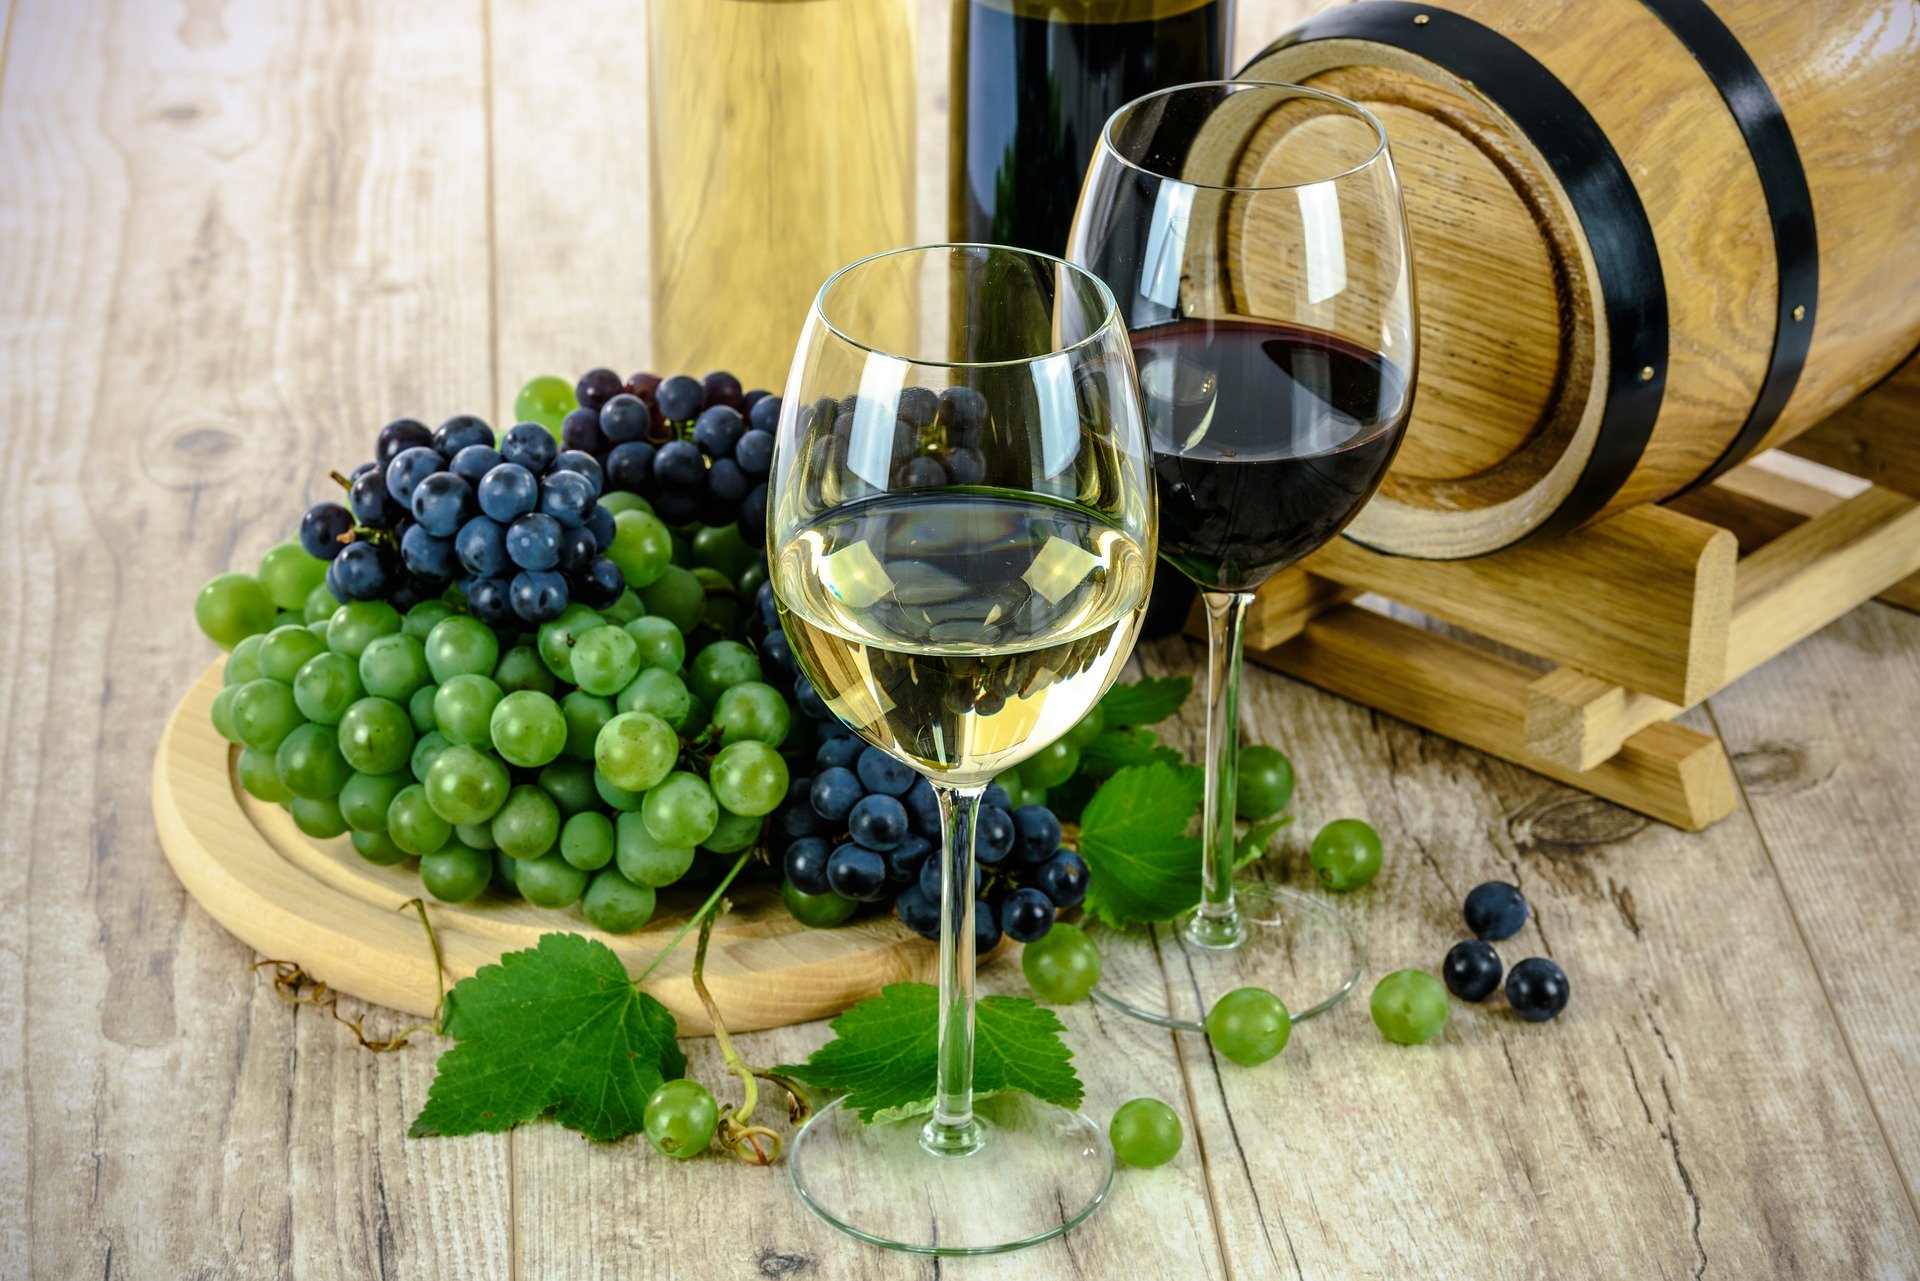 L'emploi du cadre dans le secteur vinicole et viticole